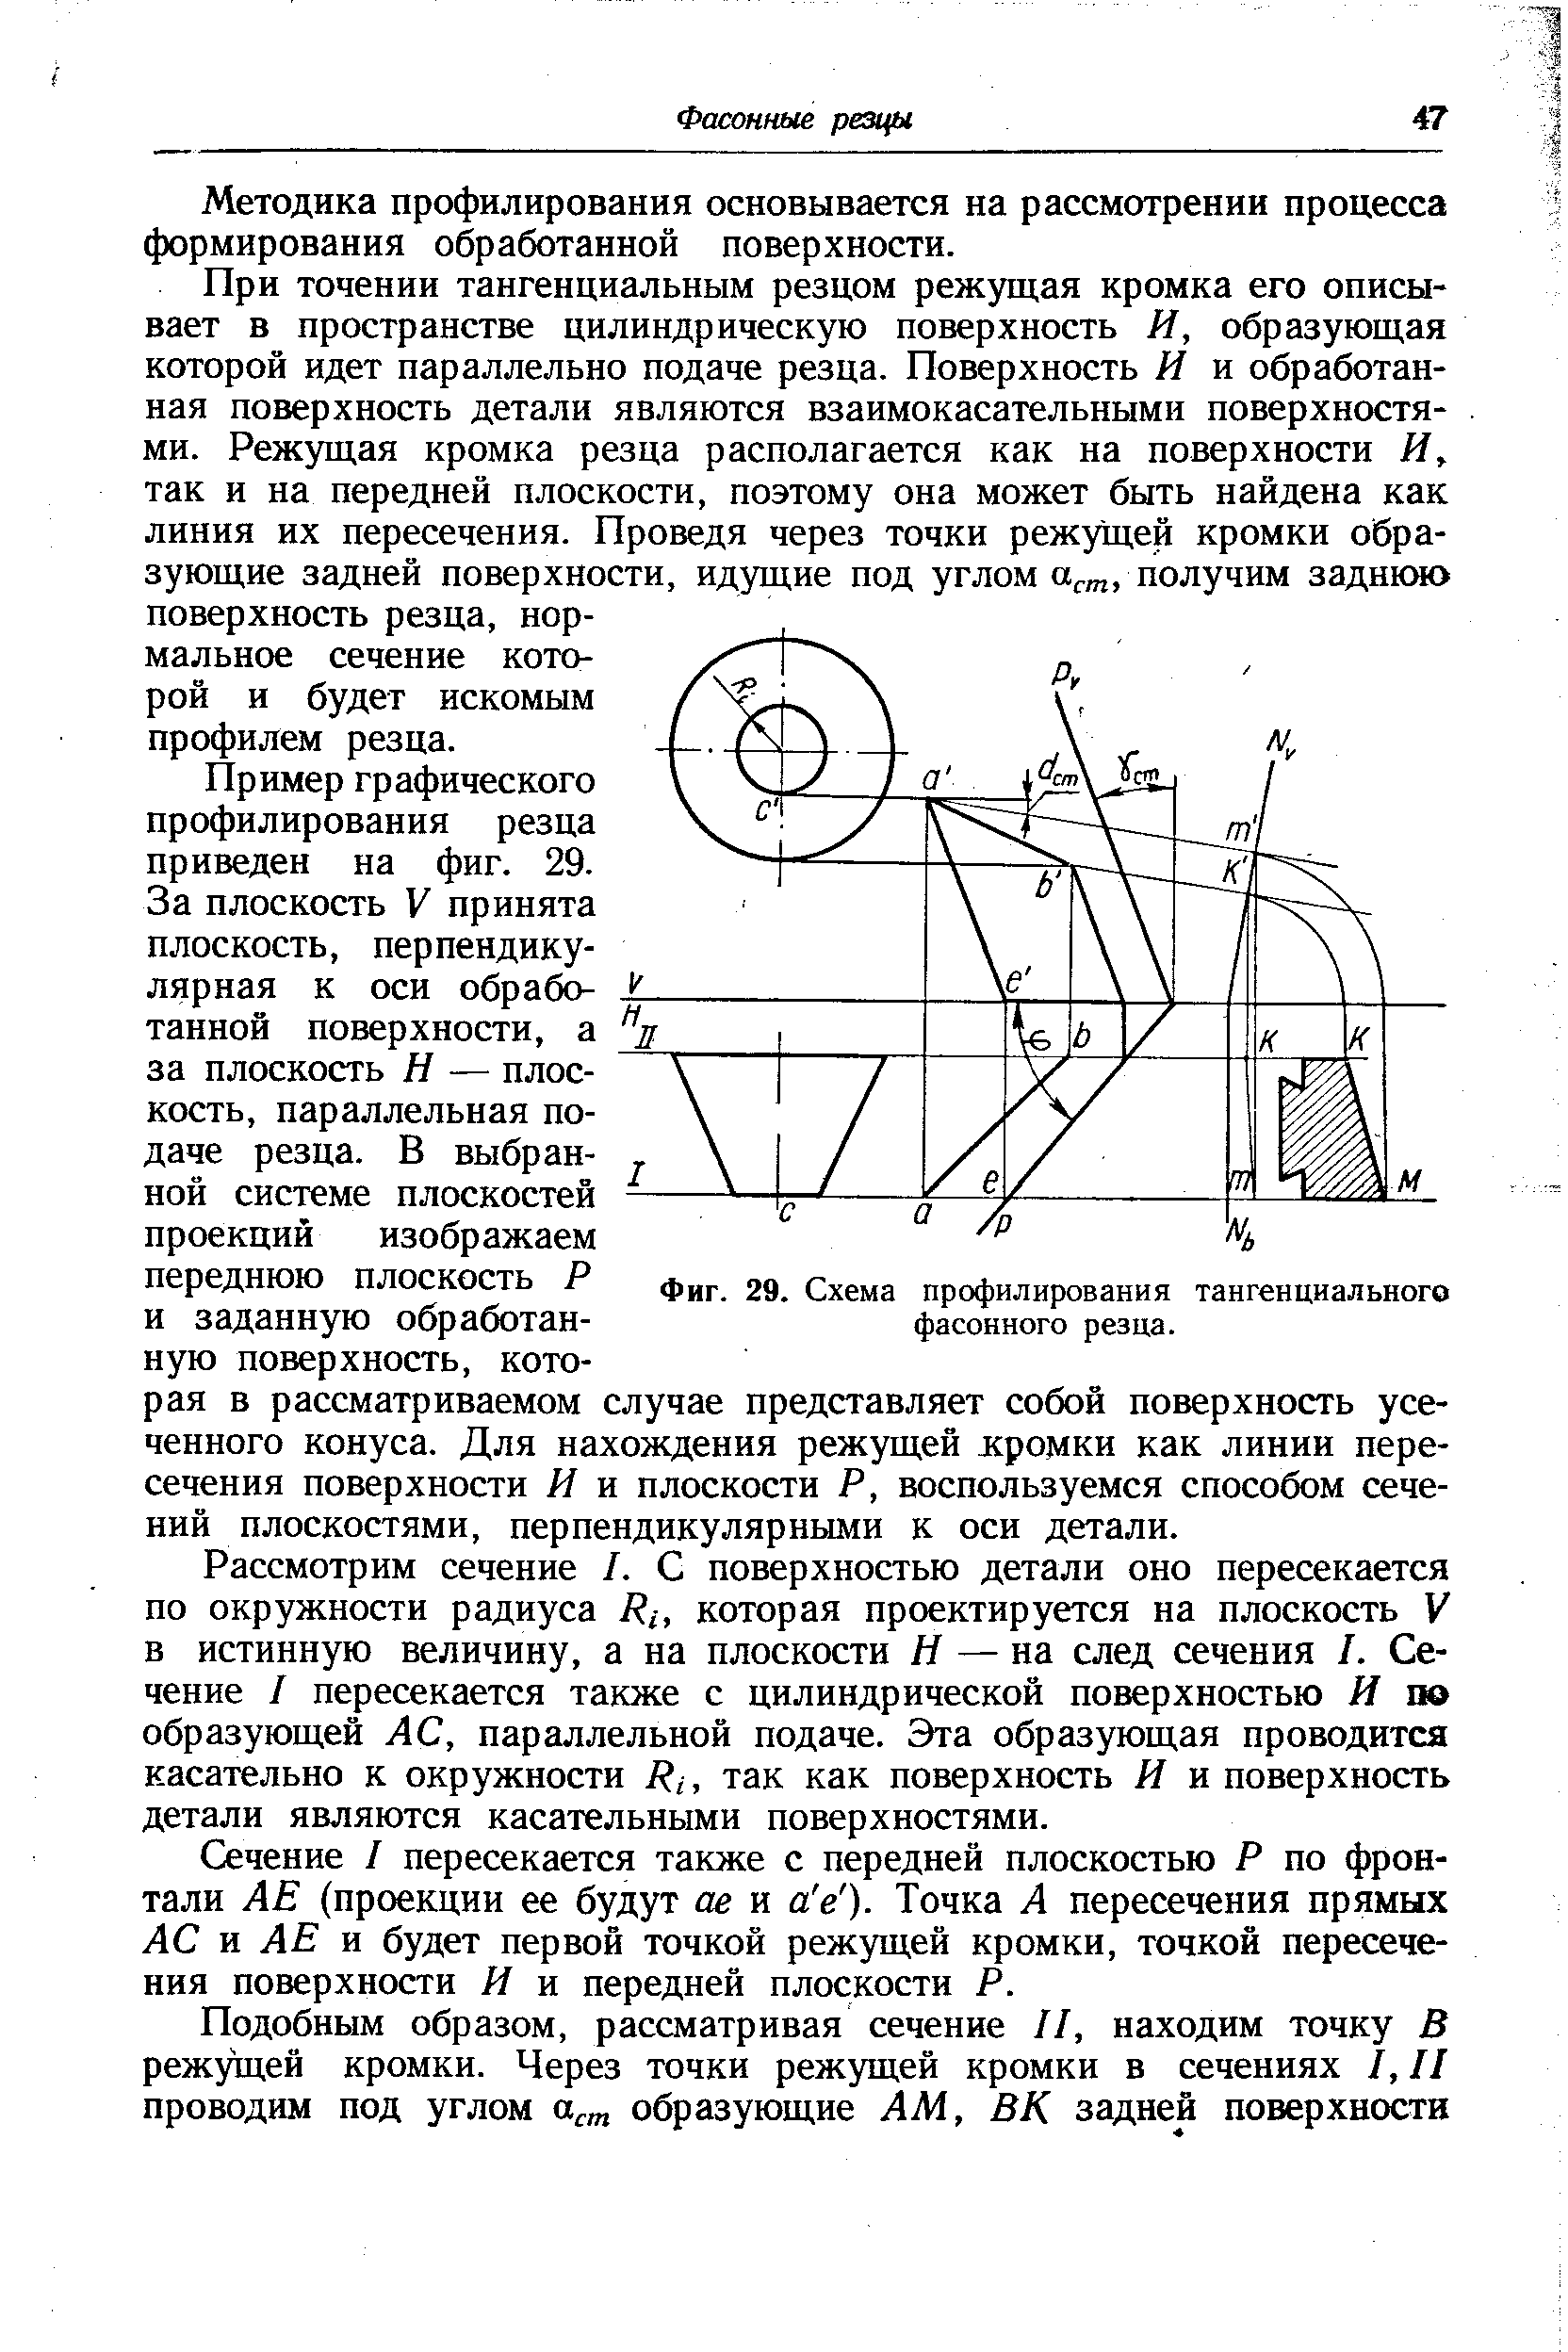 Фиг. 29. Схема профилирования тангенциального фасонного резца.
